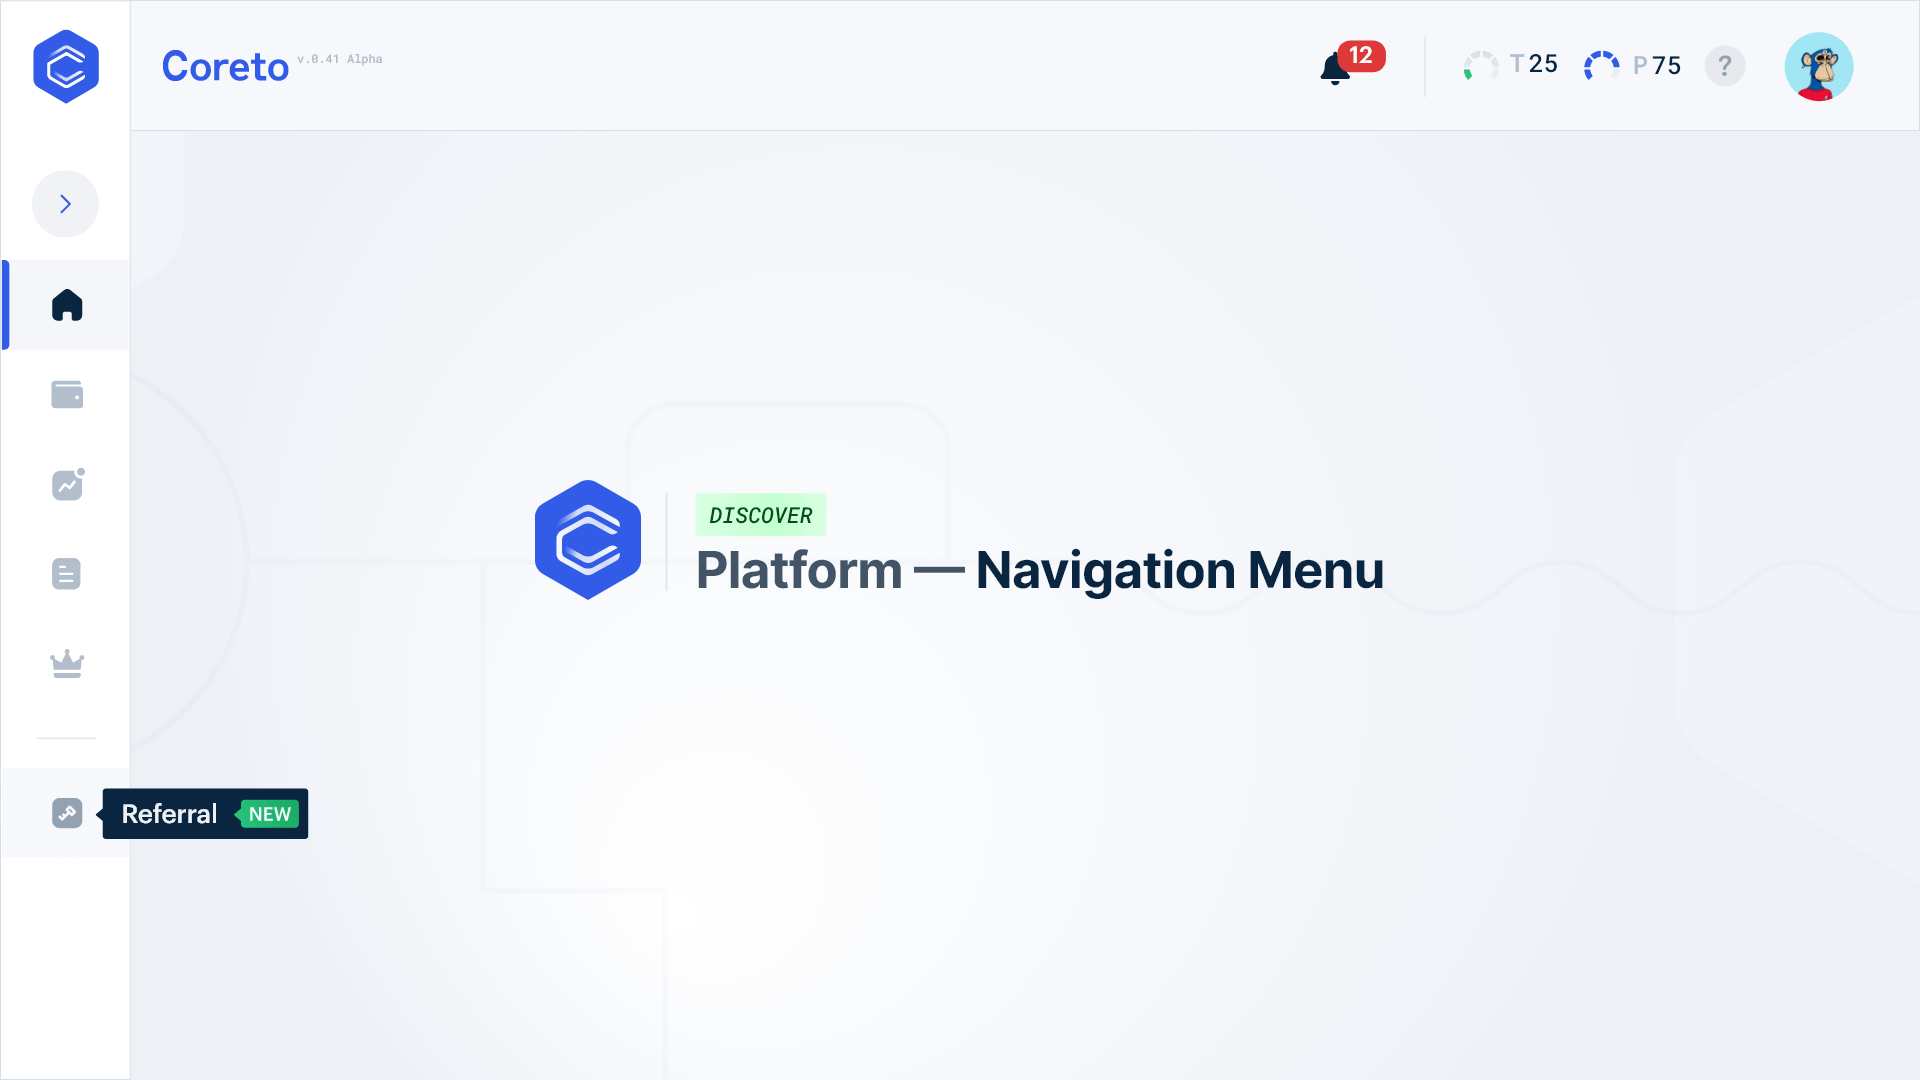 Coreto platform - navigation menu